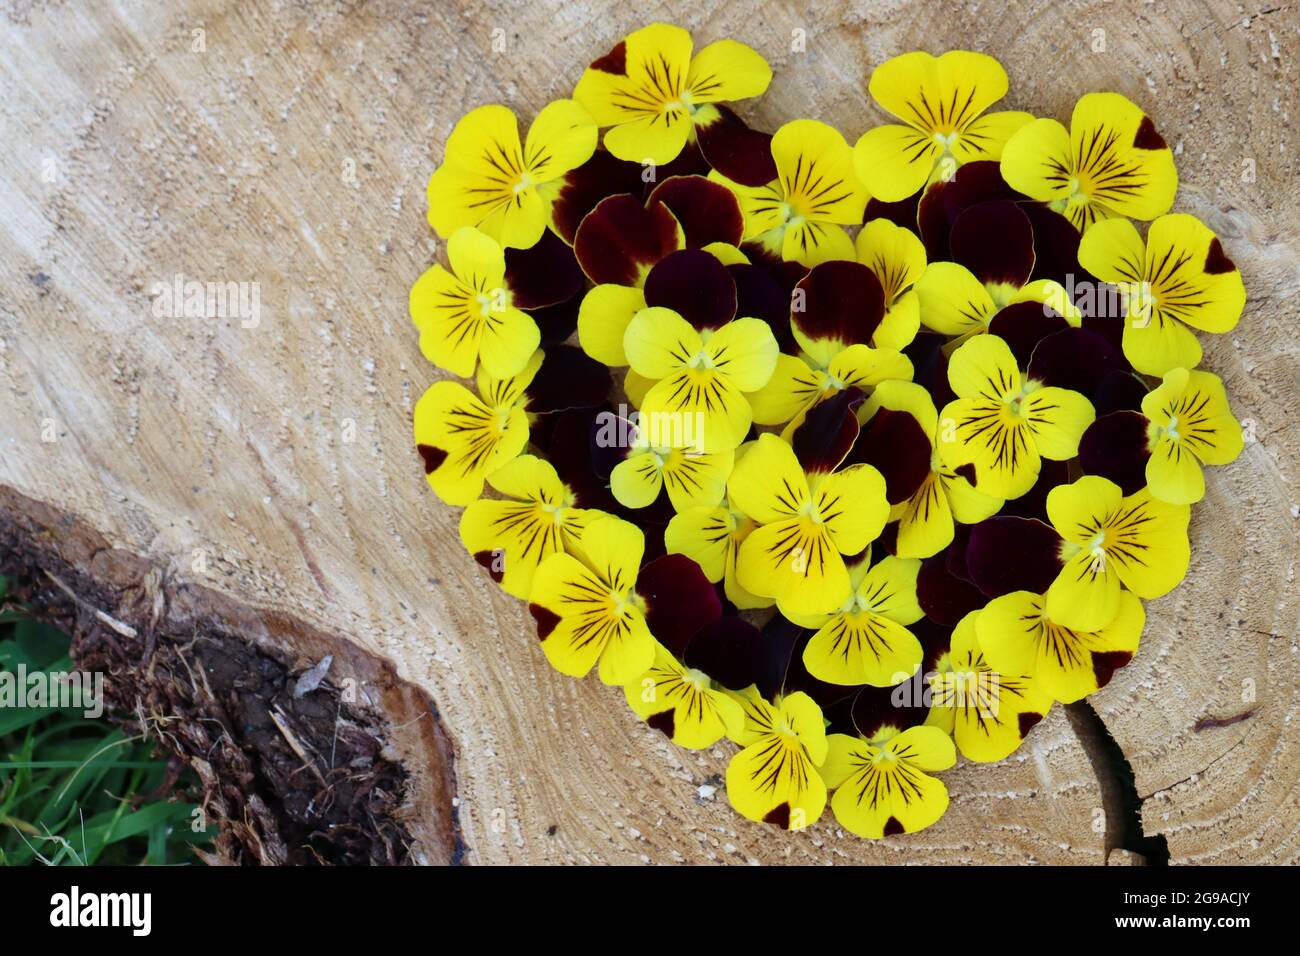 ein Herz bestehend aus Hornveilchenblüten liegt auf einer Baumscheibe Banque D'Images